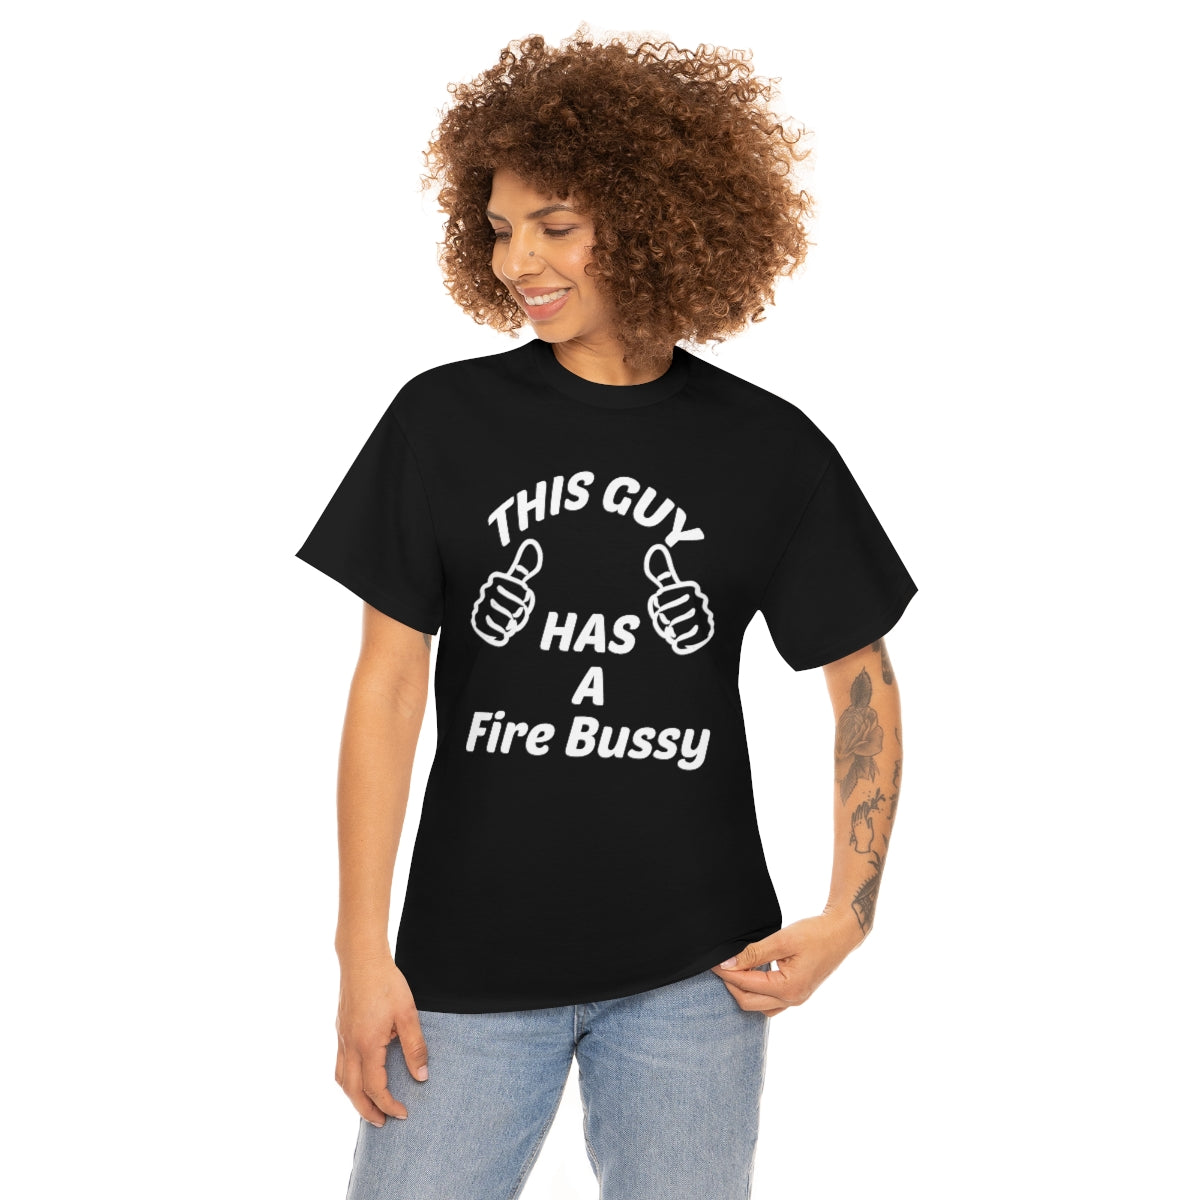 FIRE BUSSY T-SHIRT